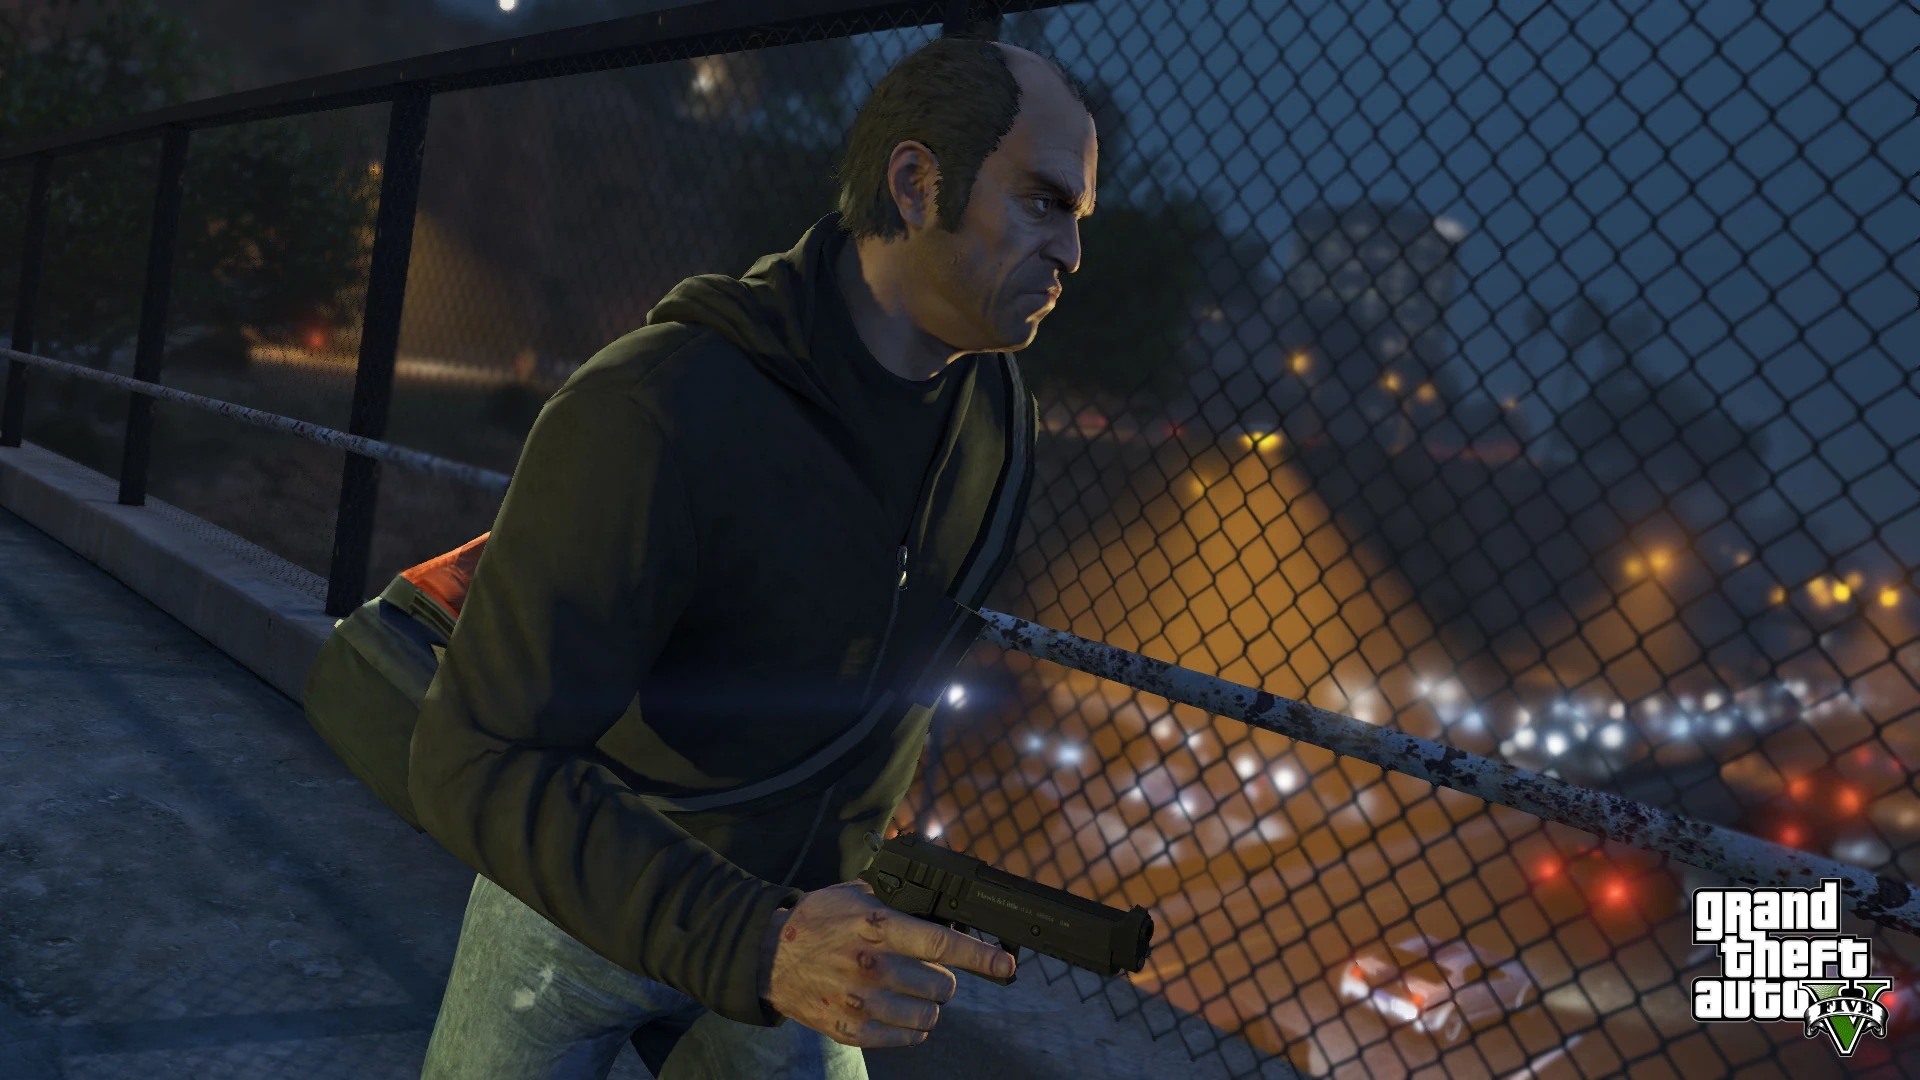 Grand Theft Auto V - PS4 Screenshot 16 - Trevor